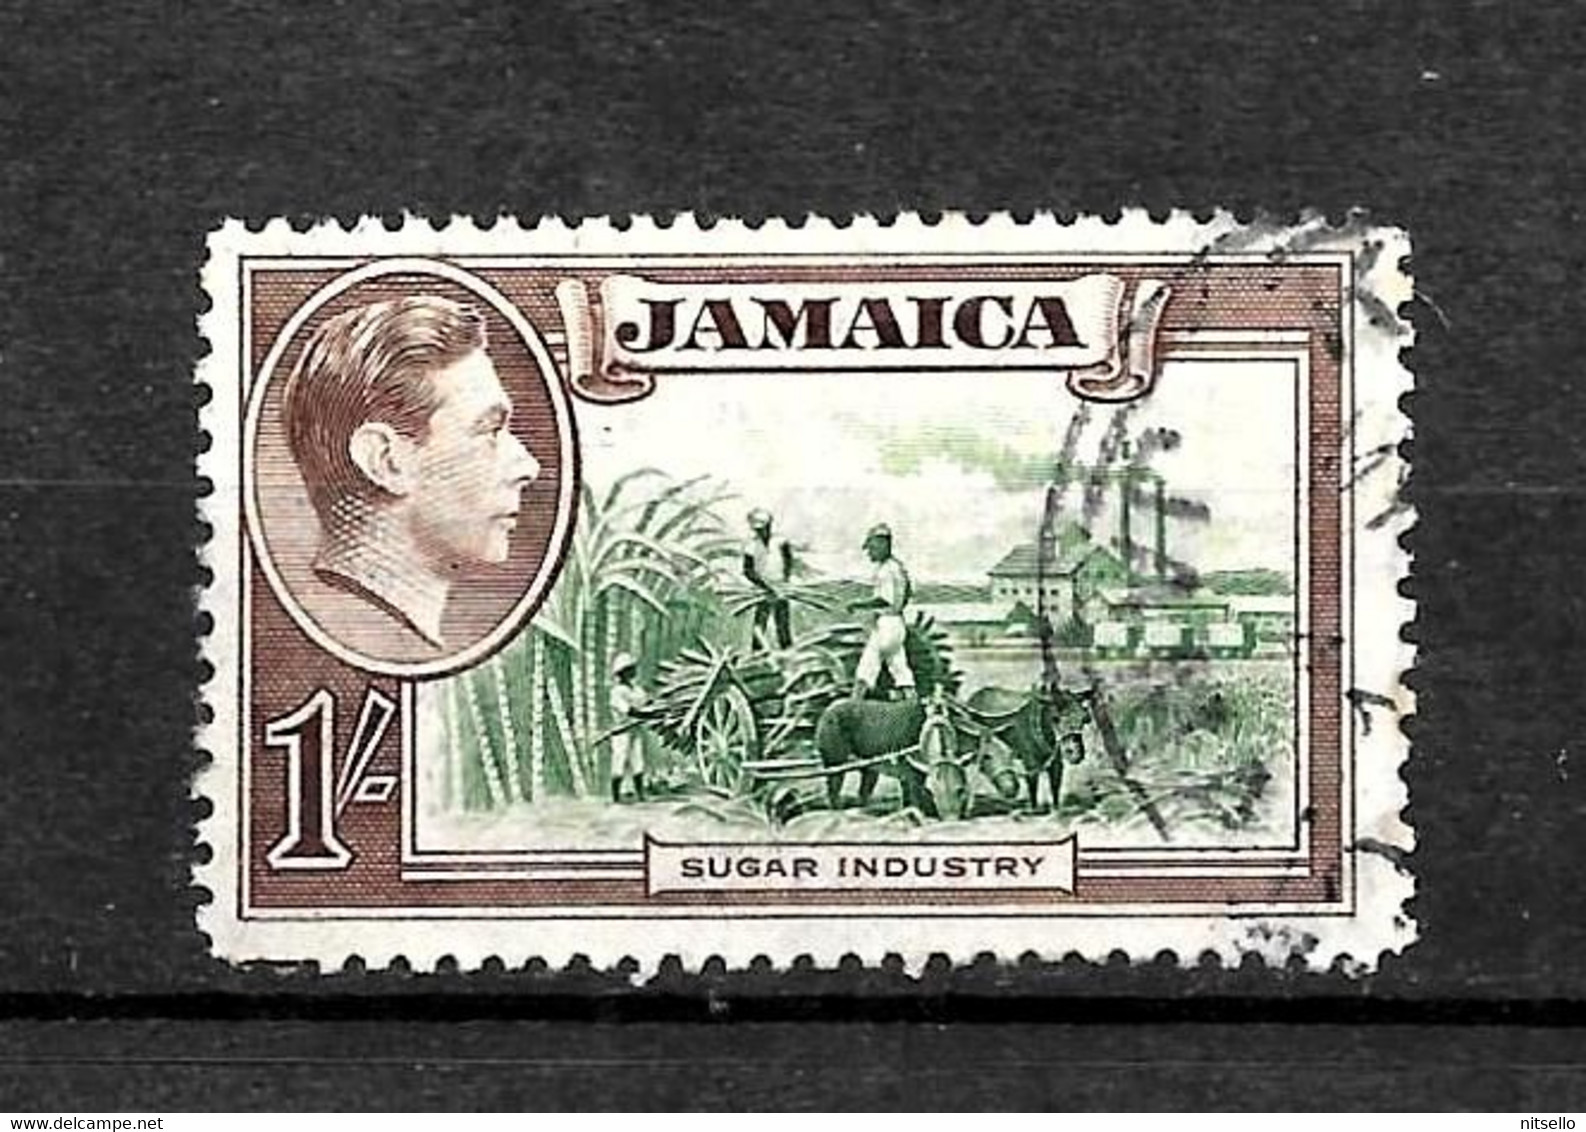 LOTE 2217 ///   JAMAICA BRITANICA - ¡¡¡ OFERTA - LIQUIDATION - JE LIQUIDE !!! - Jamaica (...-1961)